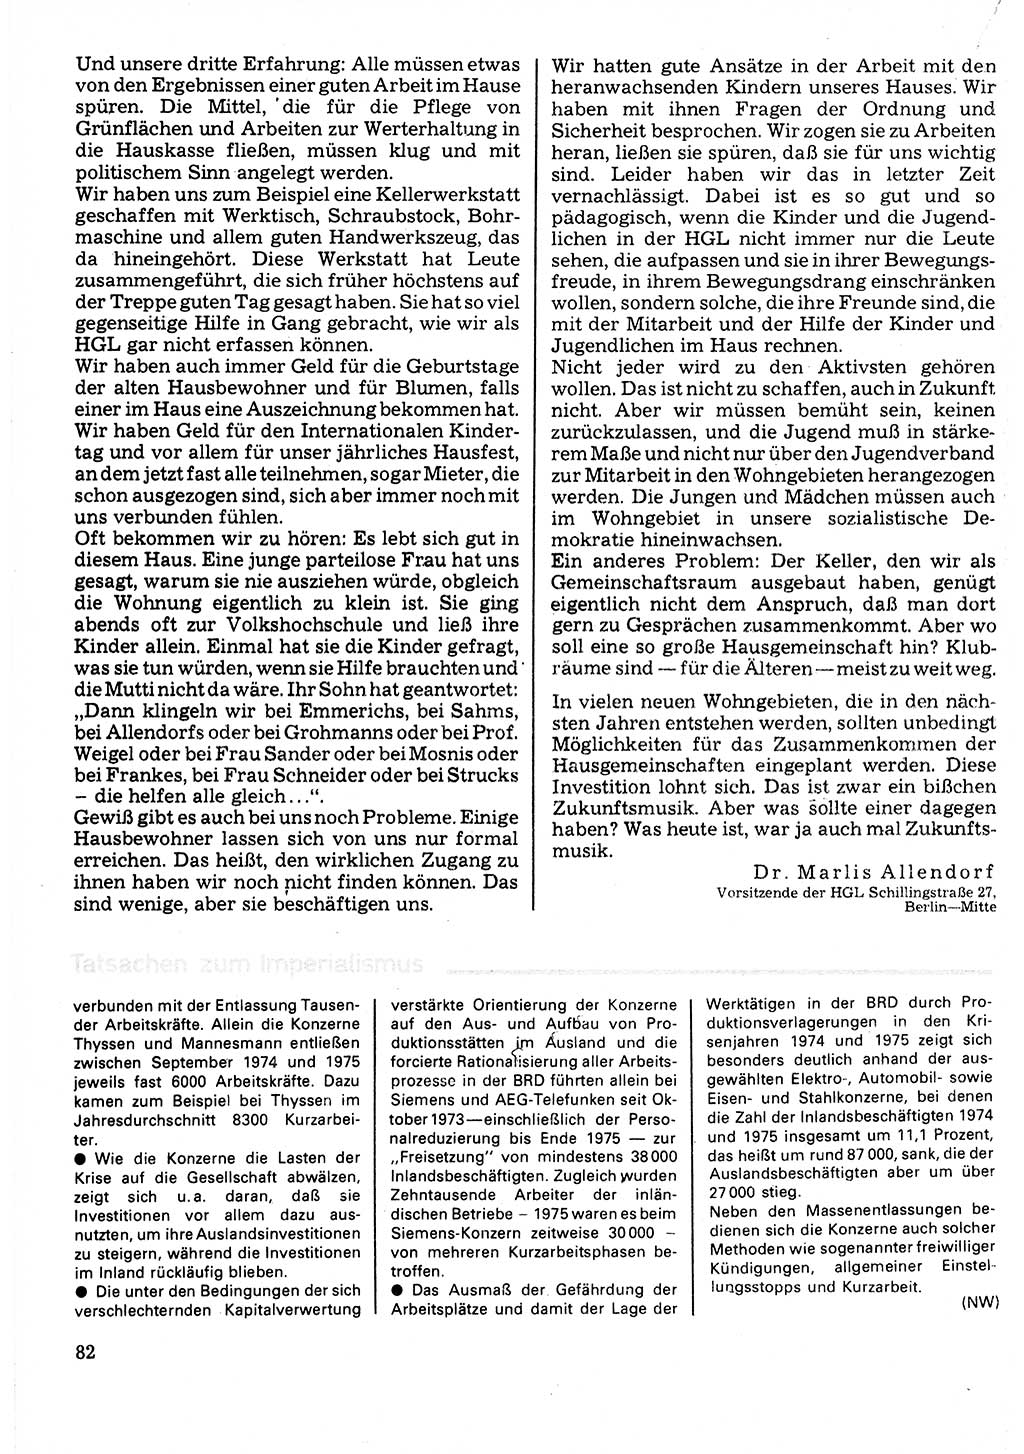 Neuer Weg (NW), Organ des Zentralkomitees (ZK) der SED (Sozialistische Einheitspartei Deutschlands) für Fragen des Parteilebens, 32. Jahrgang [Deutsche Demokratische Republik (DDR)] 1977, Seite 82 (NW ZK SED DDR 1977, S. 82)